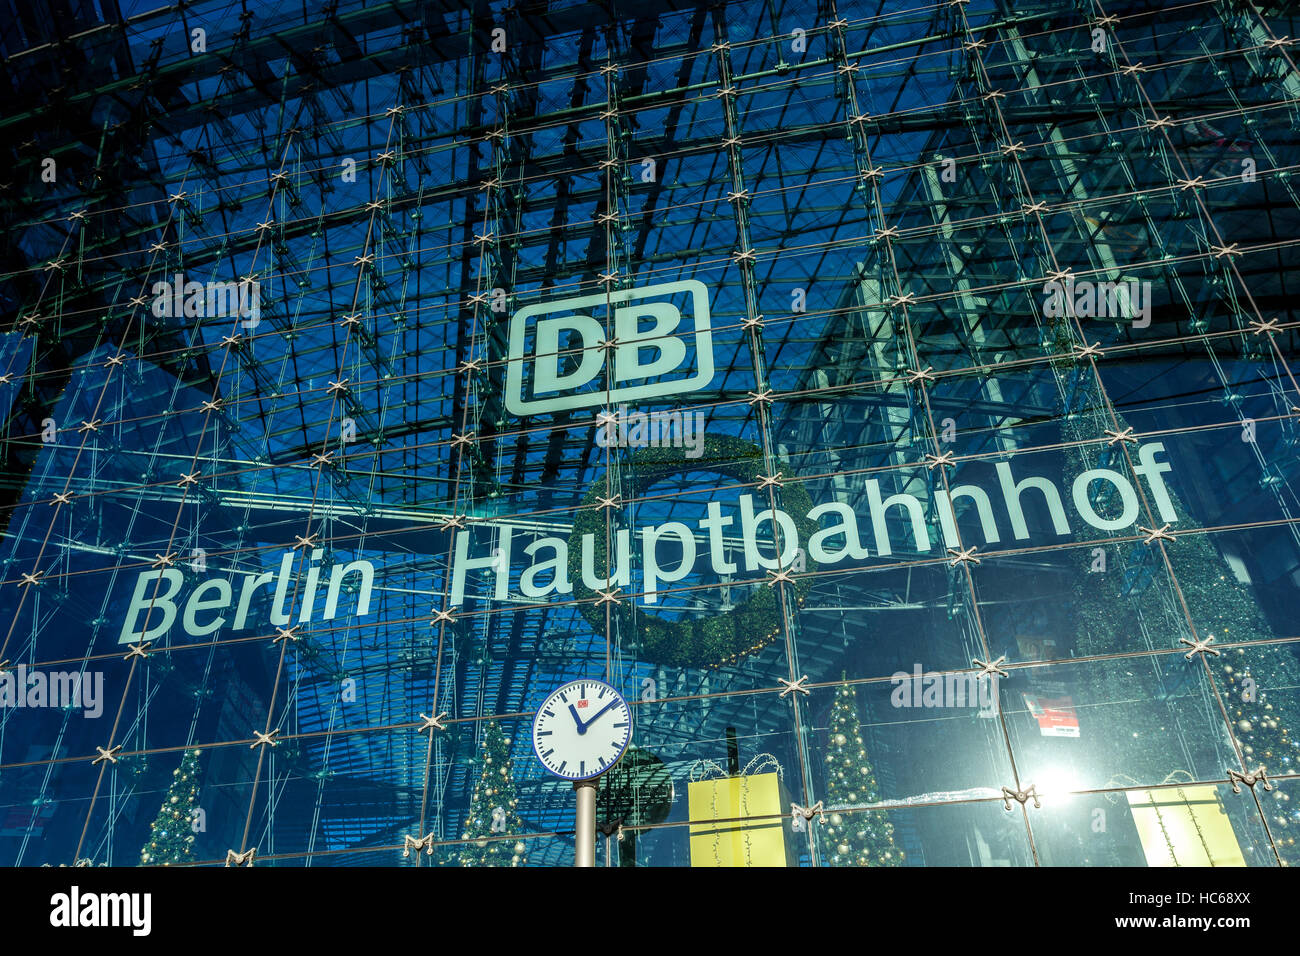 Estación de tren Hauptbahnhof, estación principal de Berlín, Alemania Foto de stock